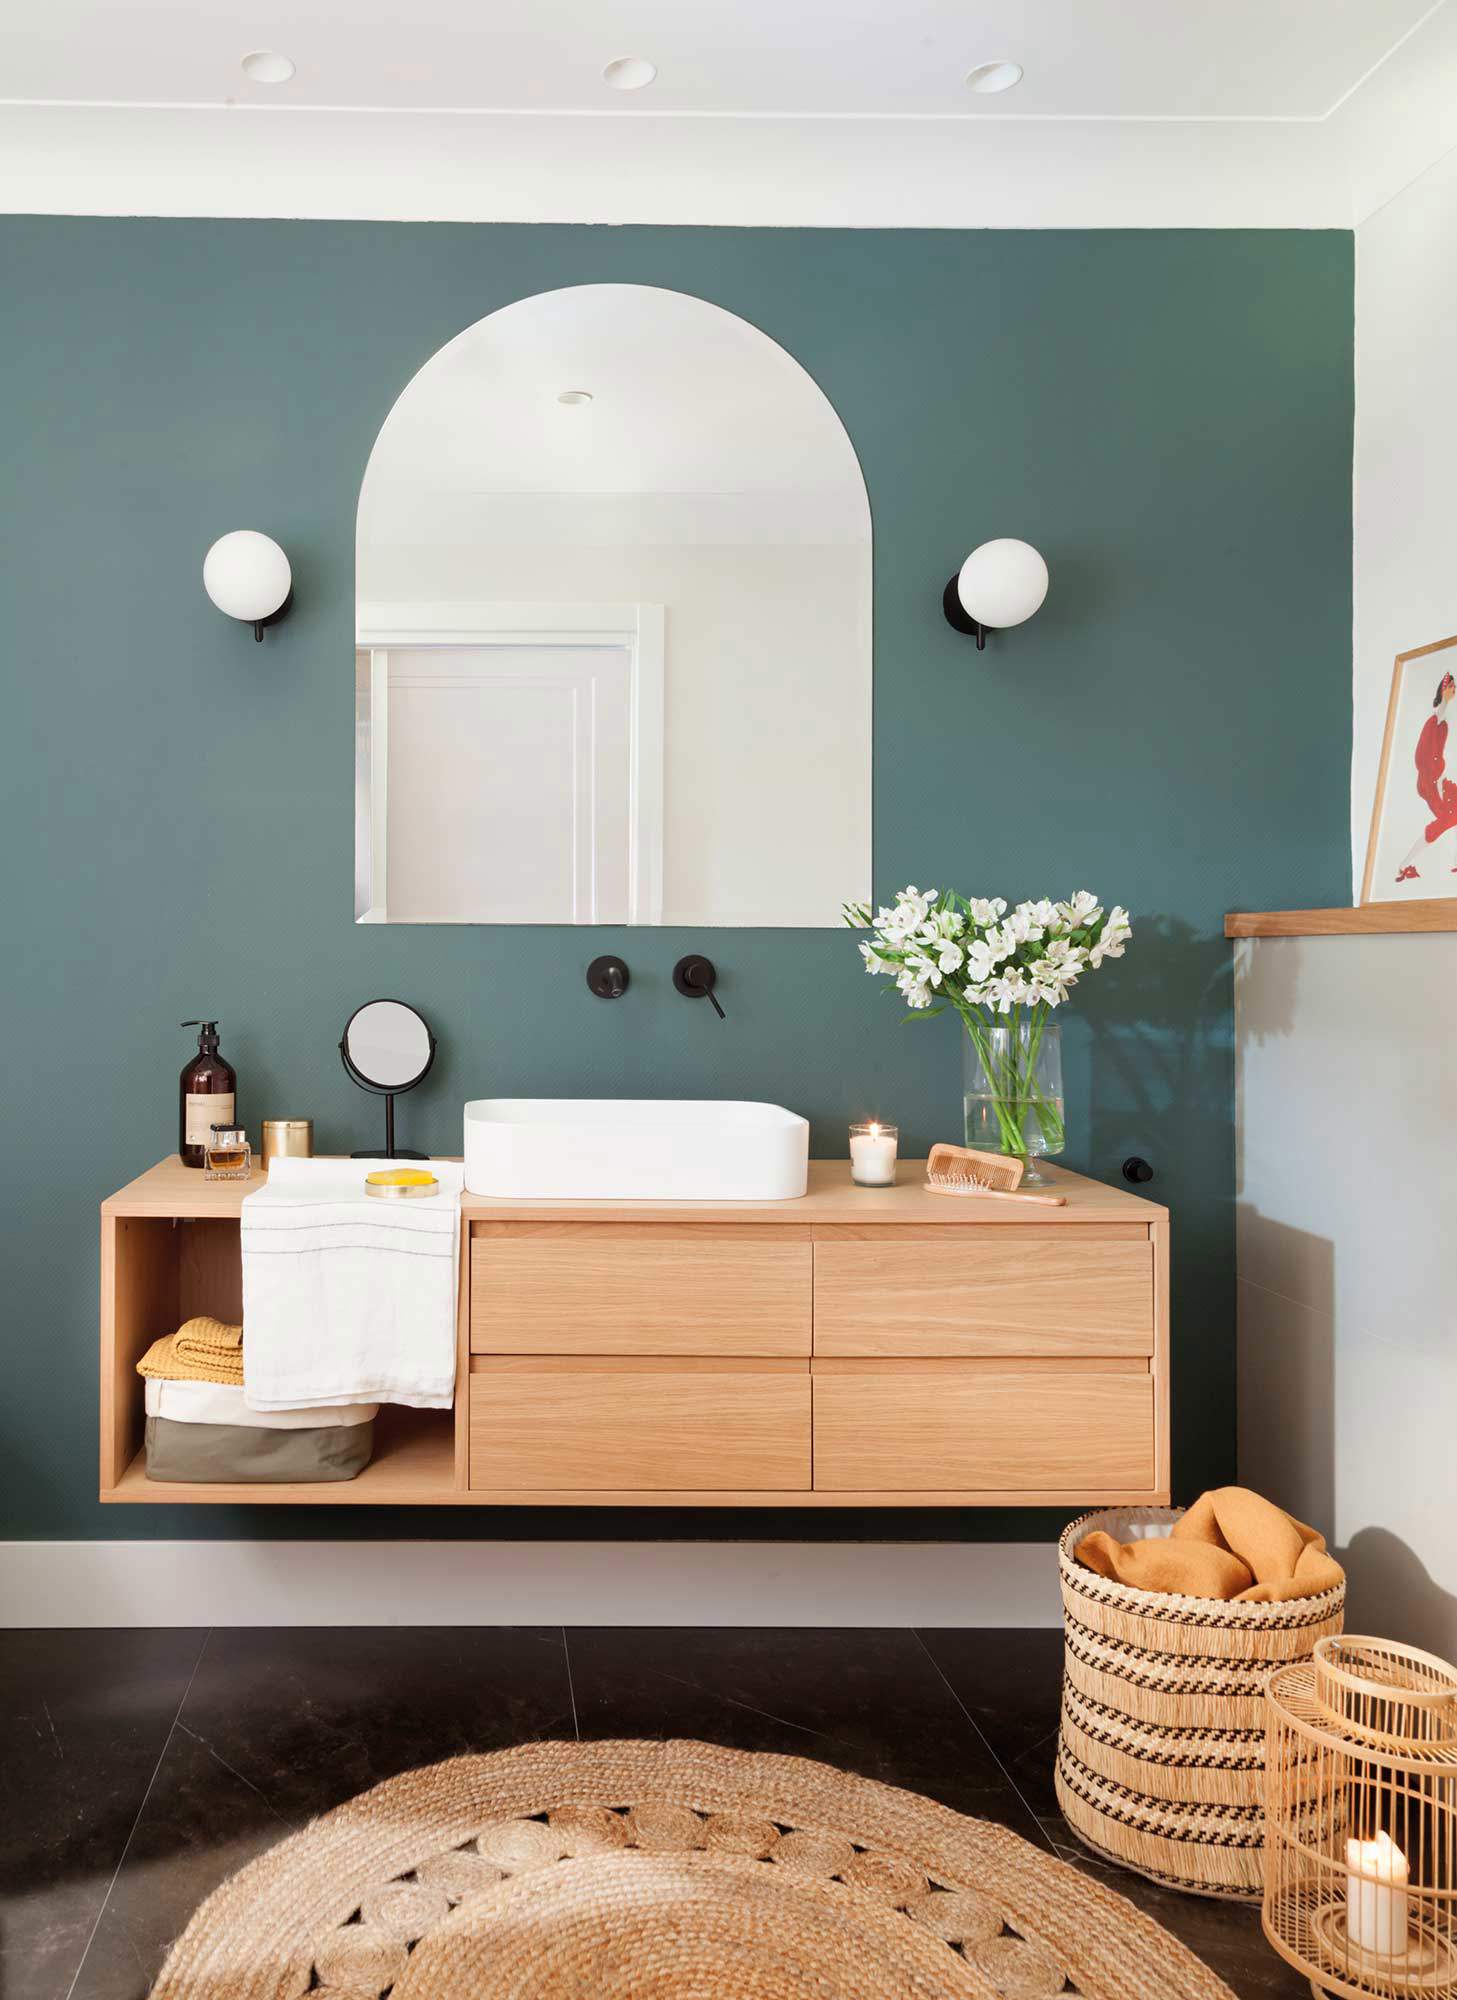 Baño con pared de lavabo pintada en verde, mueble volado y espejo